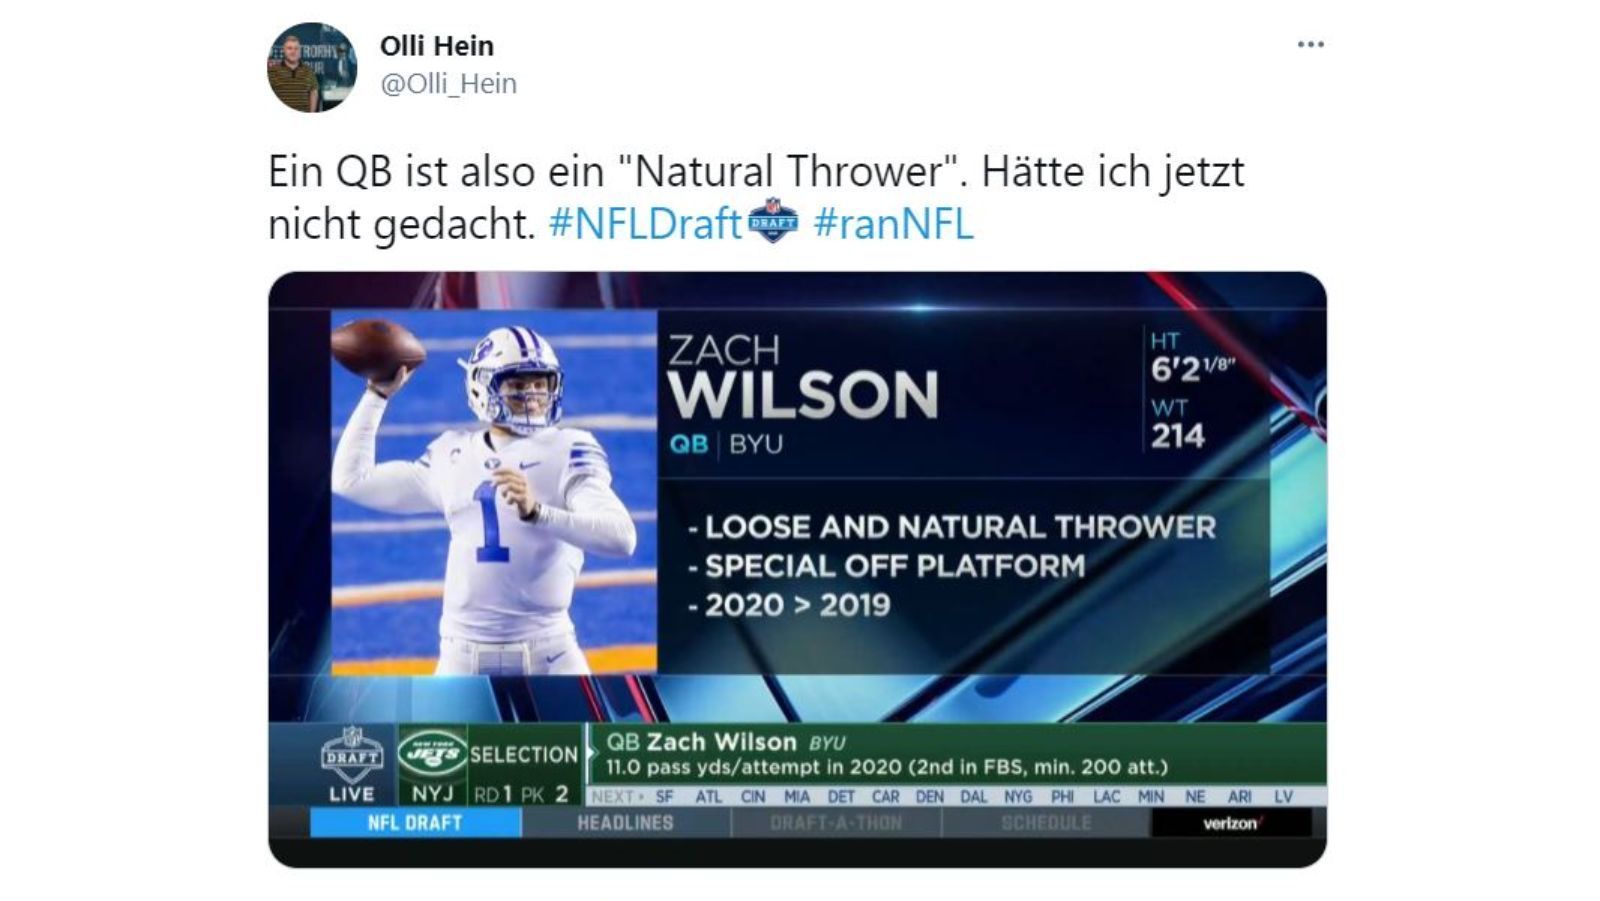 
                <strong>Der Quarterback - Ein "Natural Thrower"</strong><br>
                Die Analysen der TV-Experten in den USA sind meistens detailliert und hilfreich - meistens zumindest. Im Fall des neuen New York Jets-Quarterbacks Zach Wilson verwirrten die Experten eher mit ihren Stichpunkten zu seinen Eigenschaften.
              